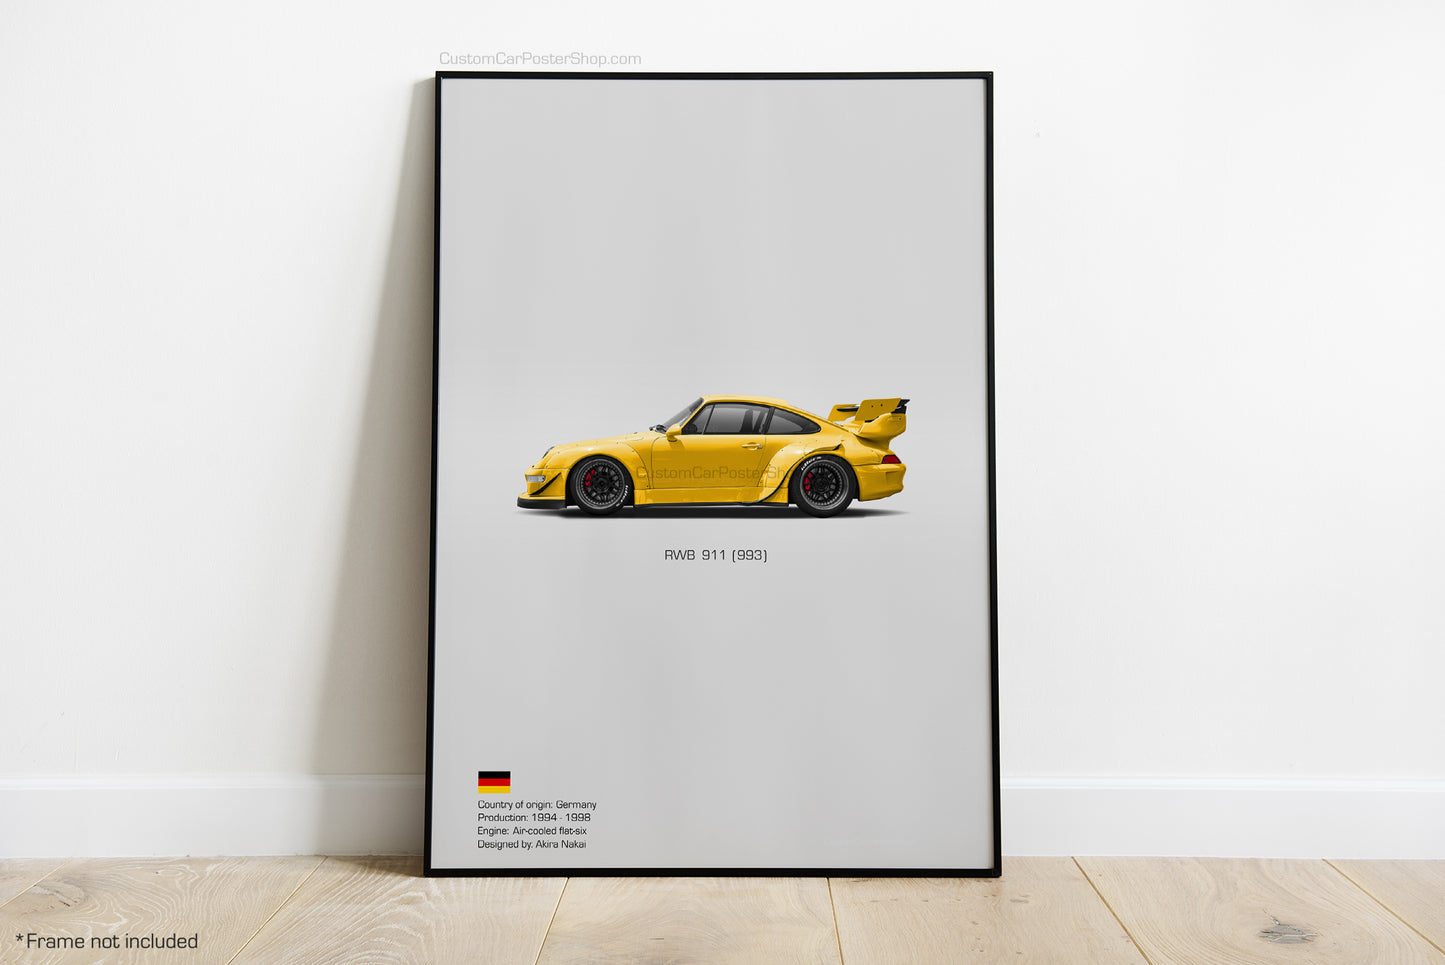 RWB Porsche 993 Poster - Wall Decor Wall Art